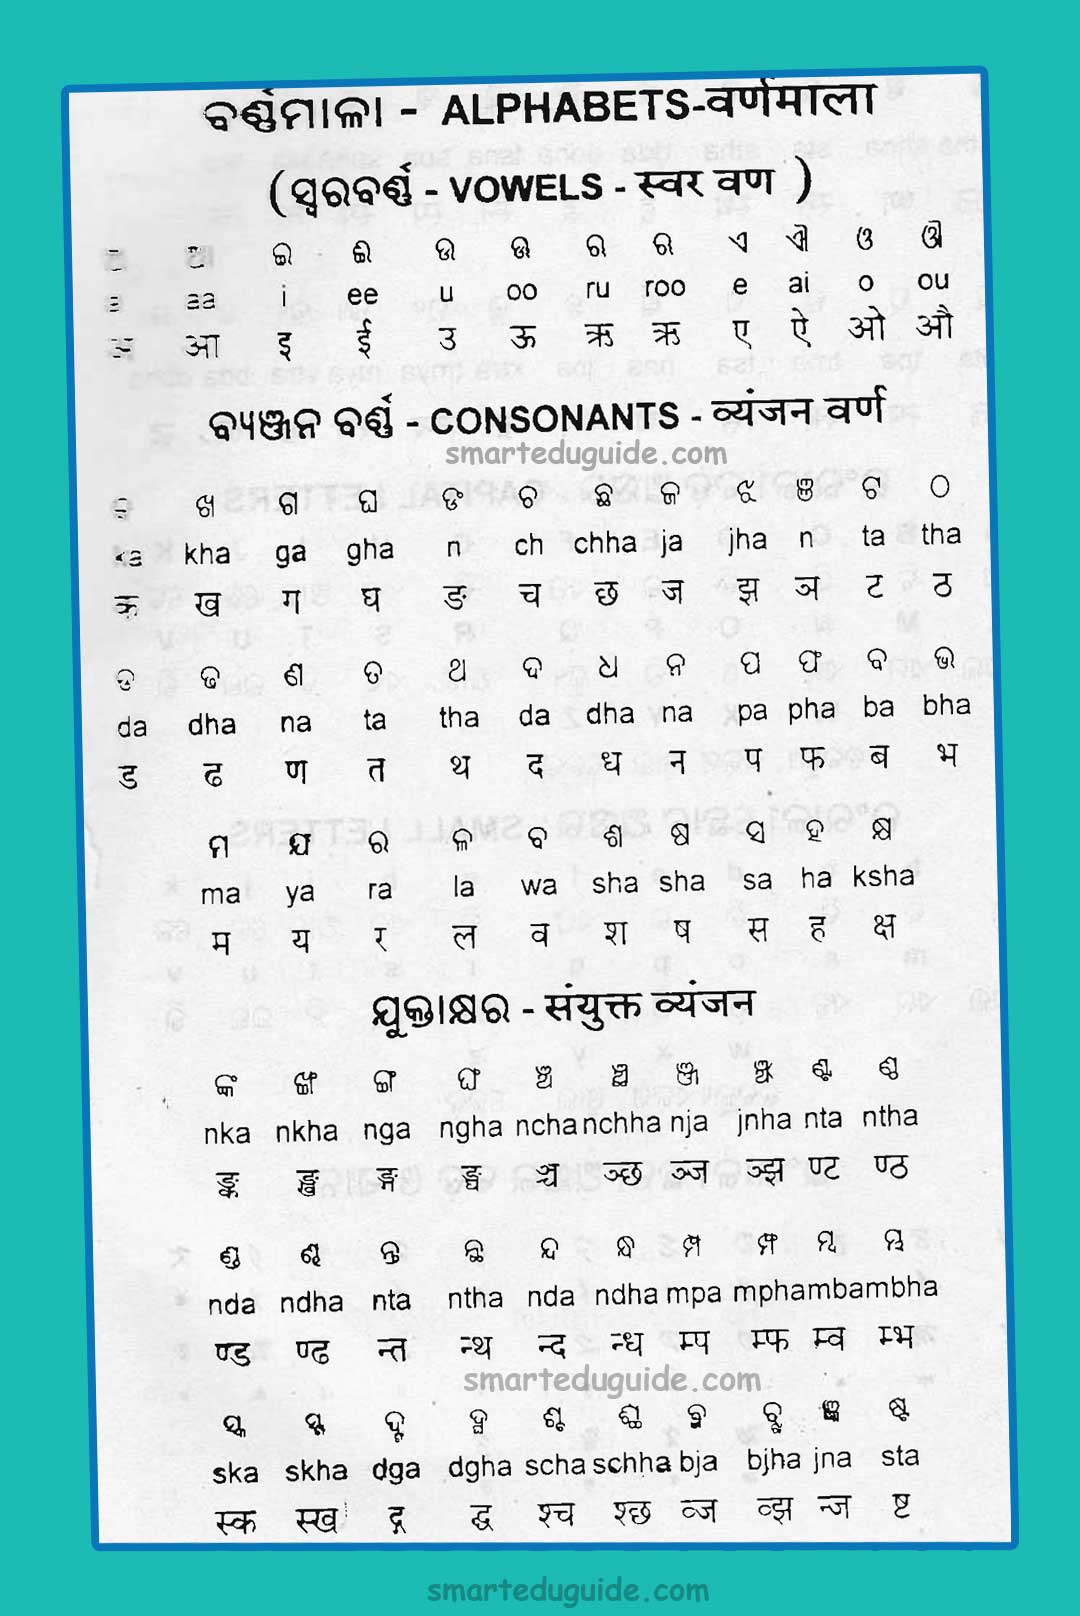 bengali alphabet english translation